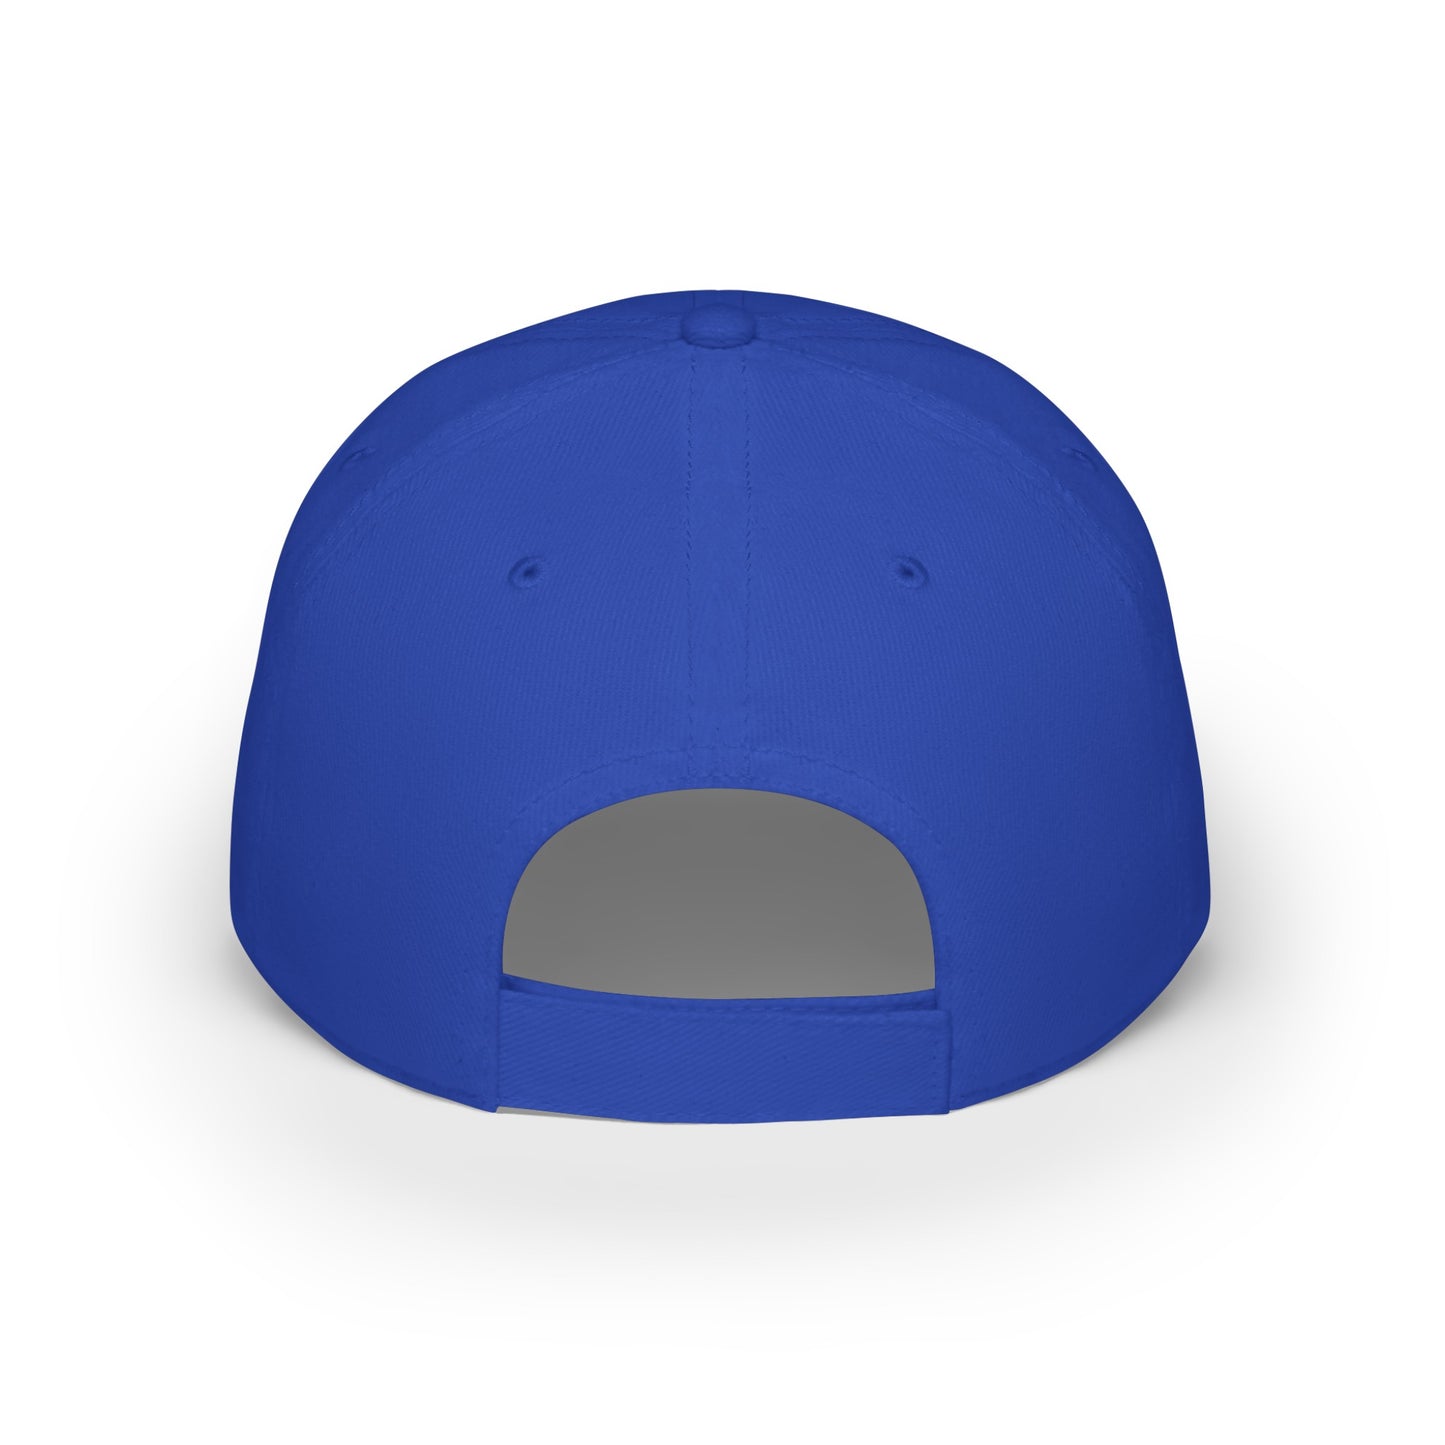 MDBTDJ#PSWC - Low Profile Baseball Cap Tattooed Dj's Limited Edition, Hats, Tattooed Djs Shop